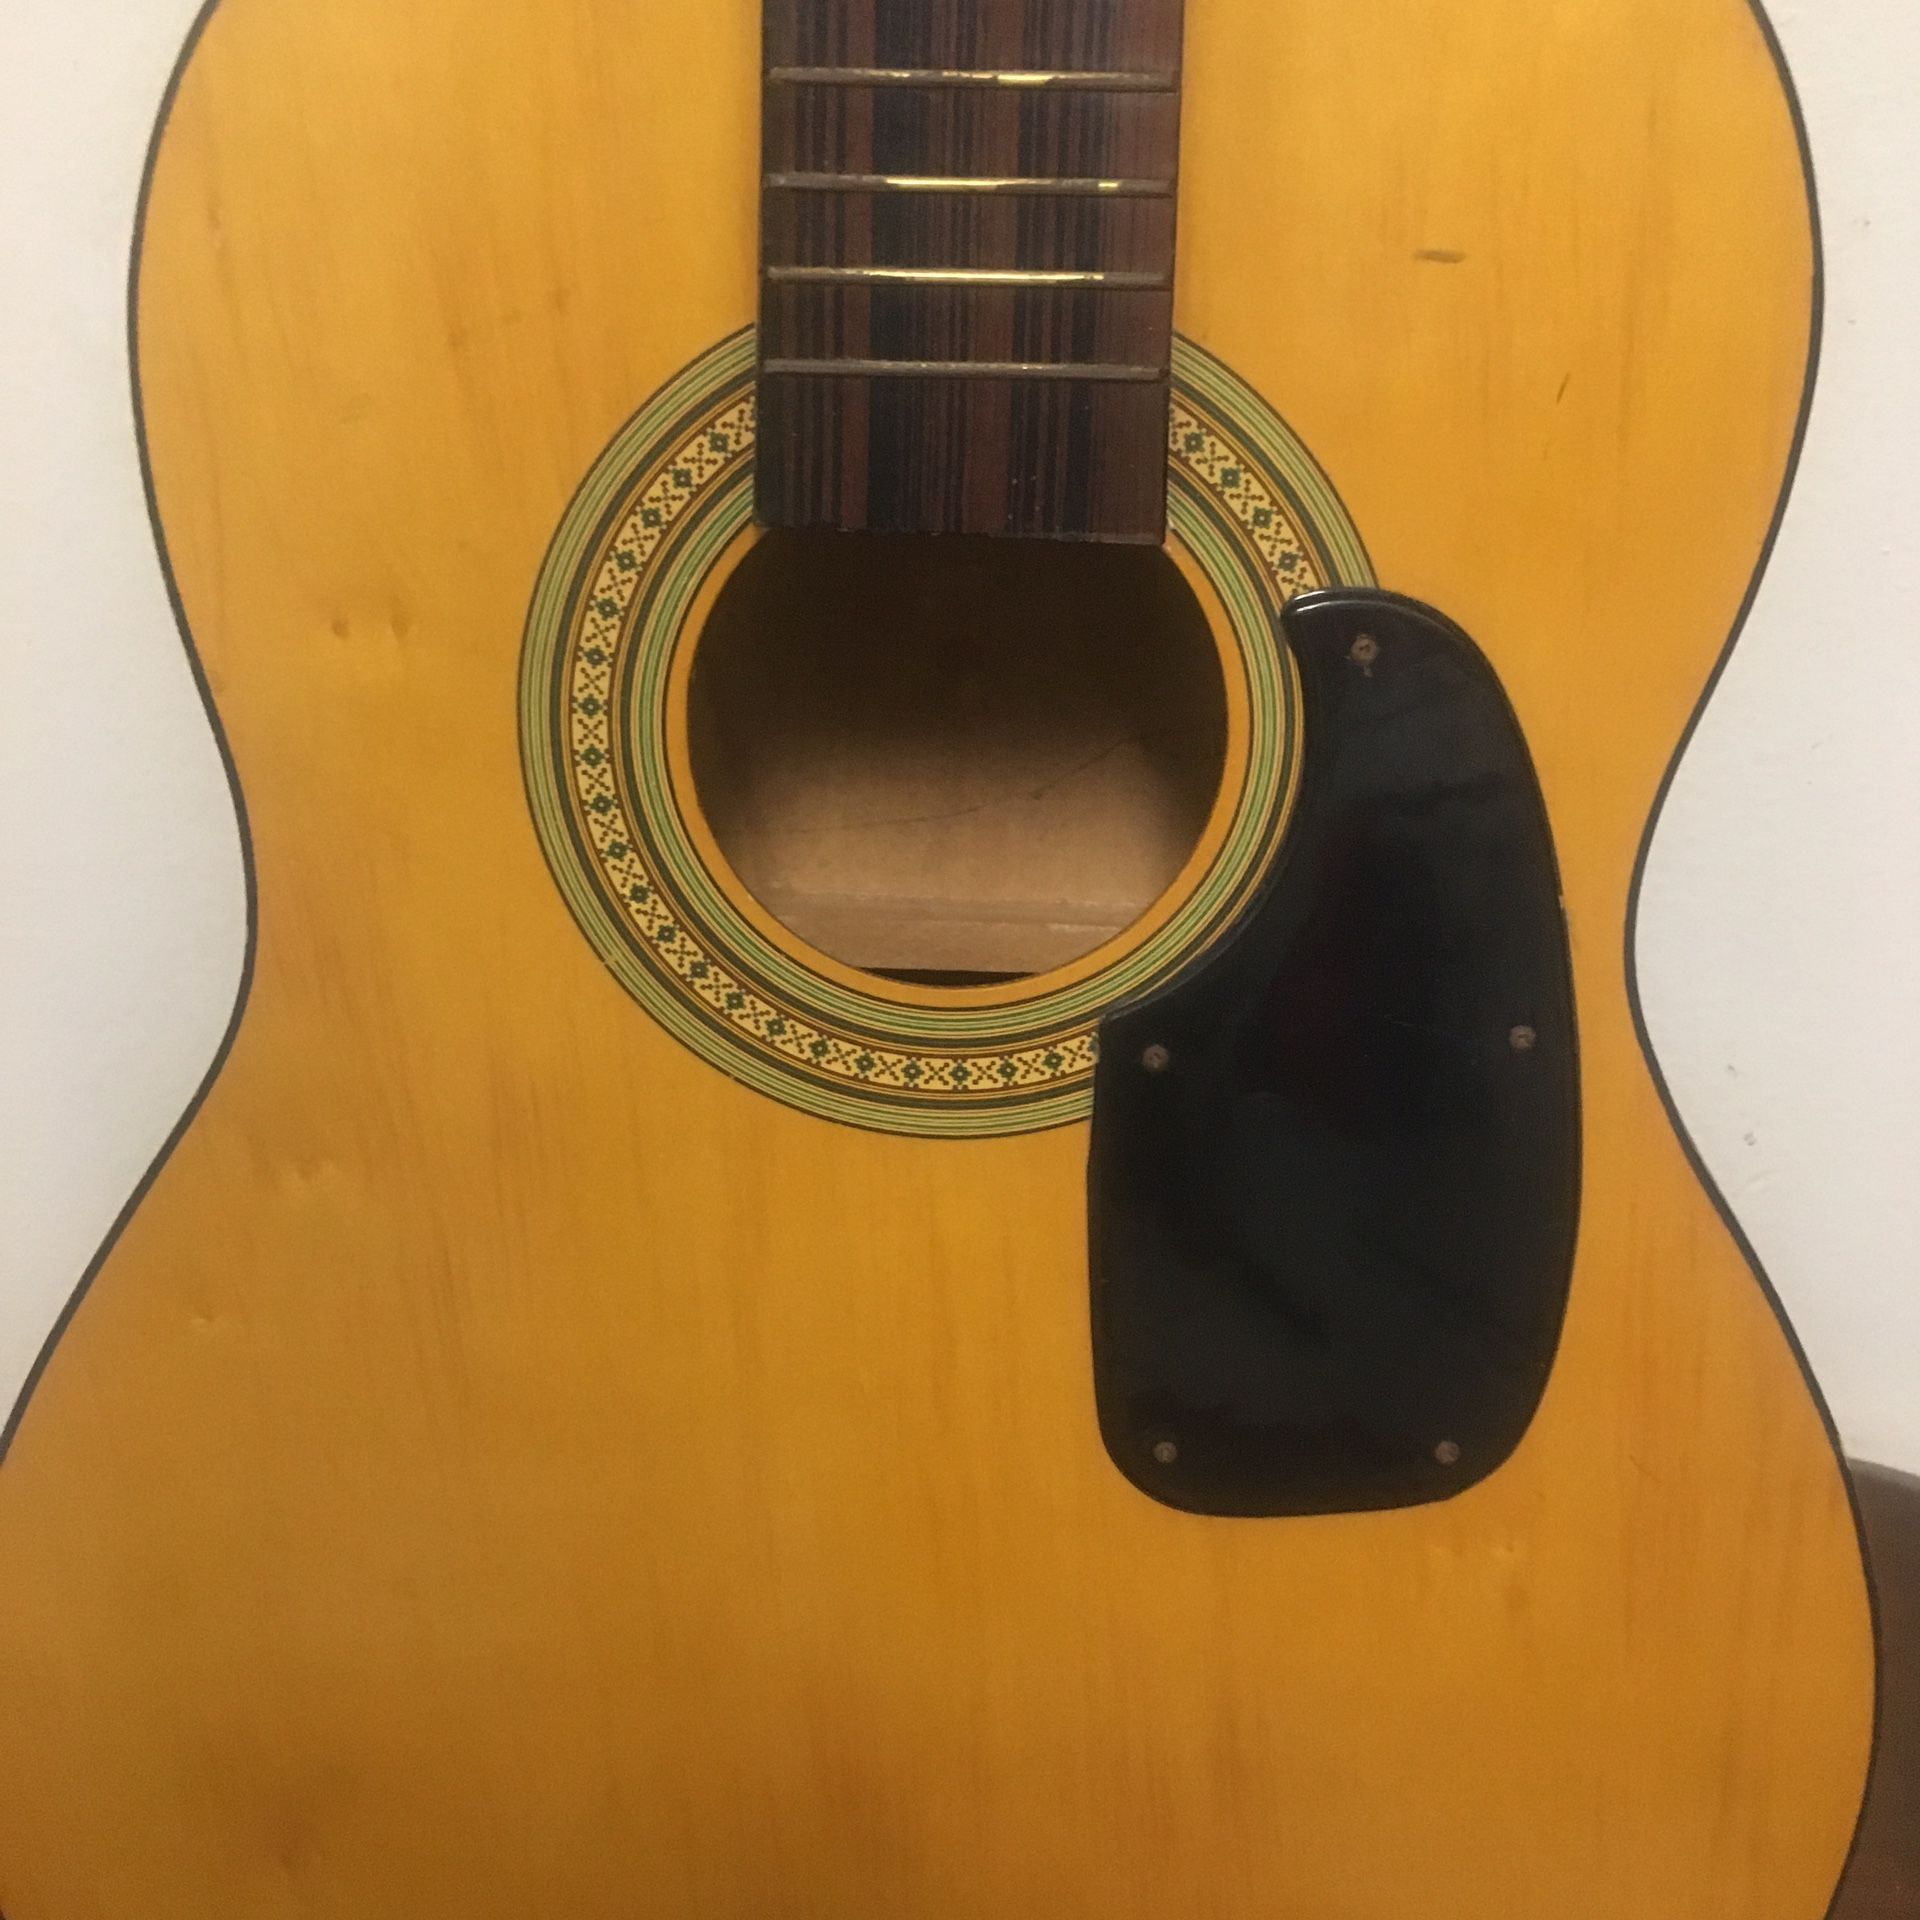 Vintage acoustic guitar